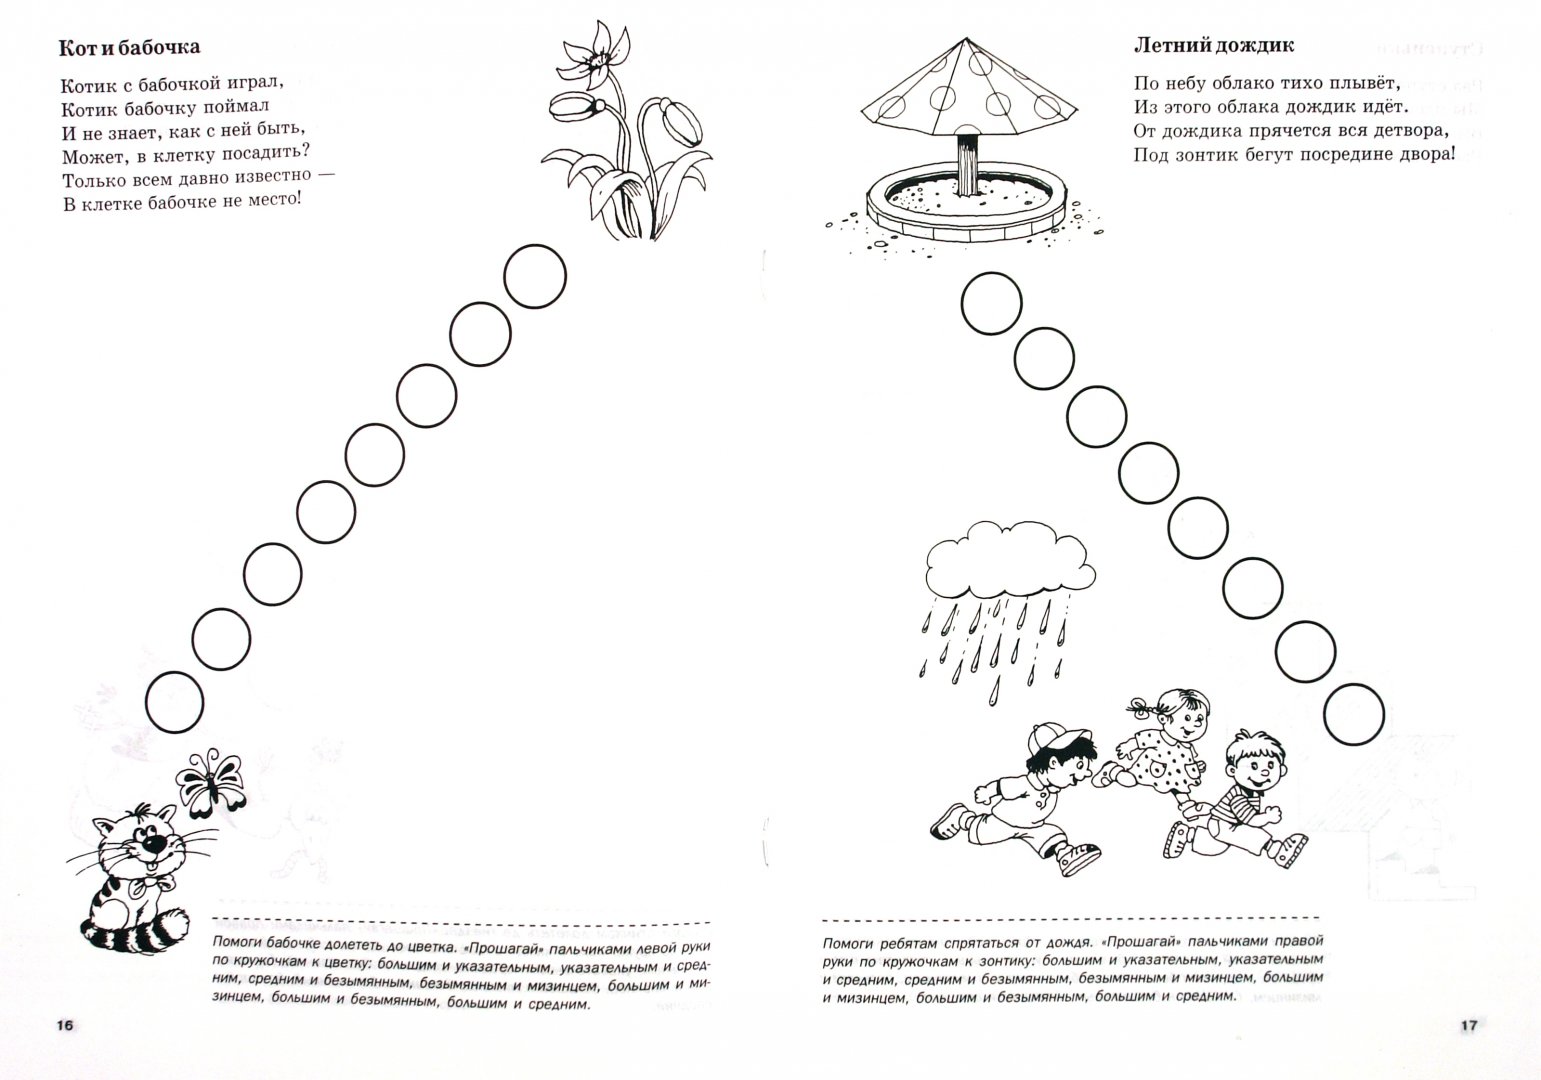 Иллюстрация 1 из 15 для Пальчиковые шаги. Упражнения для развития мелкой моторики - Чернова, Тимофеева | Лабиринт - книги. Источник: Лабиринт